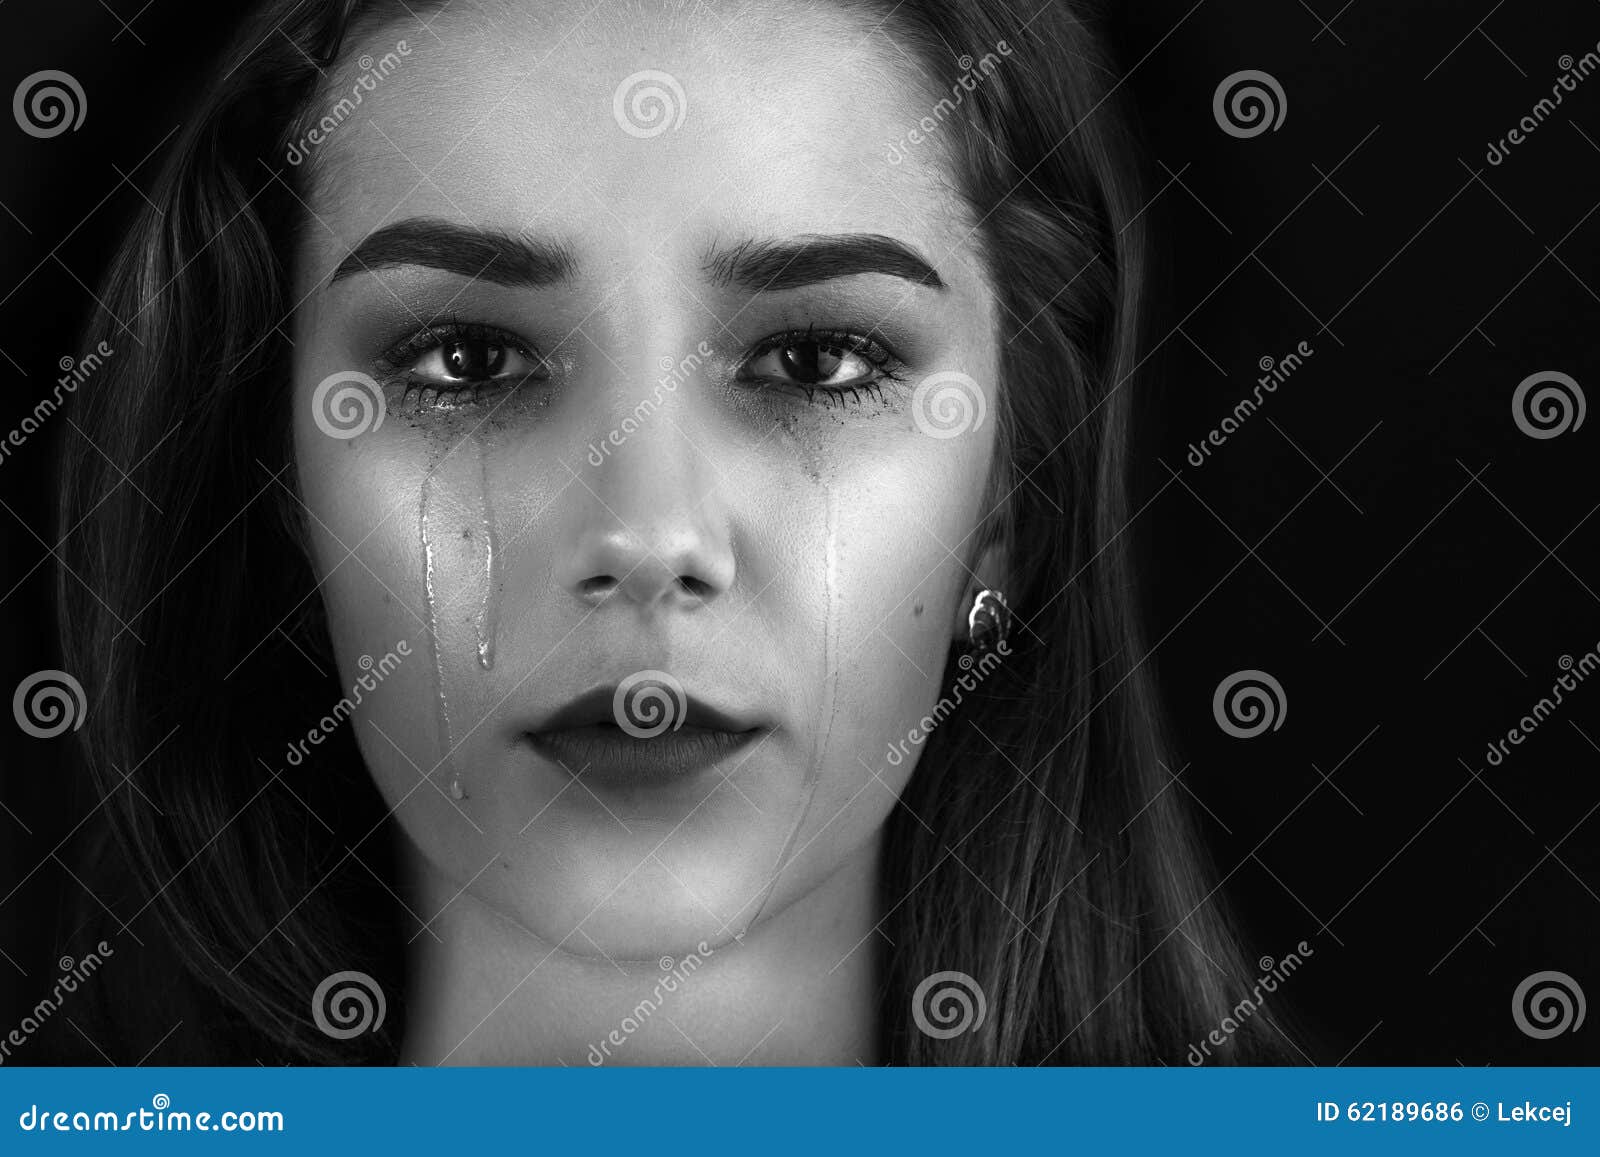 哭泣的女孩素材-哭泣的女孩图片-哭泣的女孩素材图片下载-觅知网